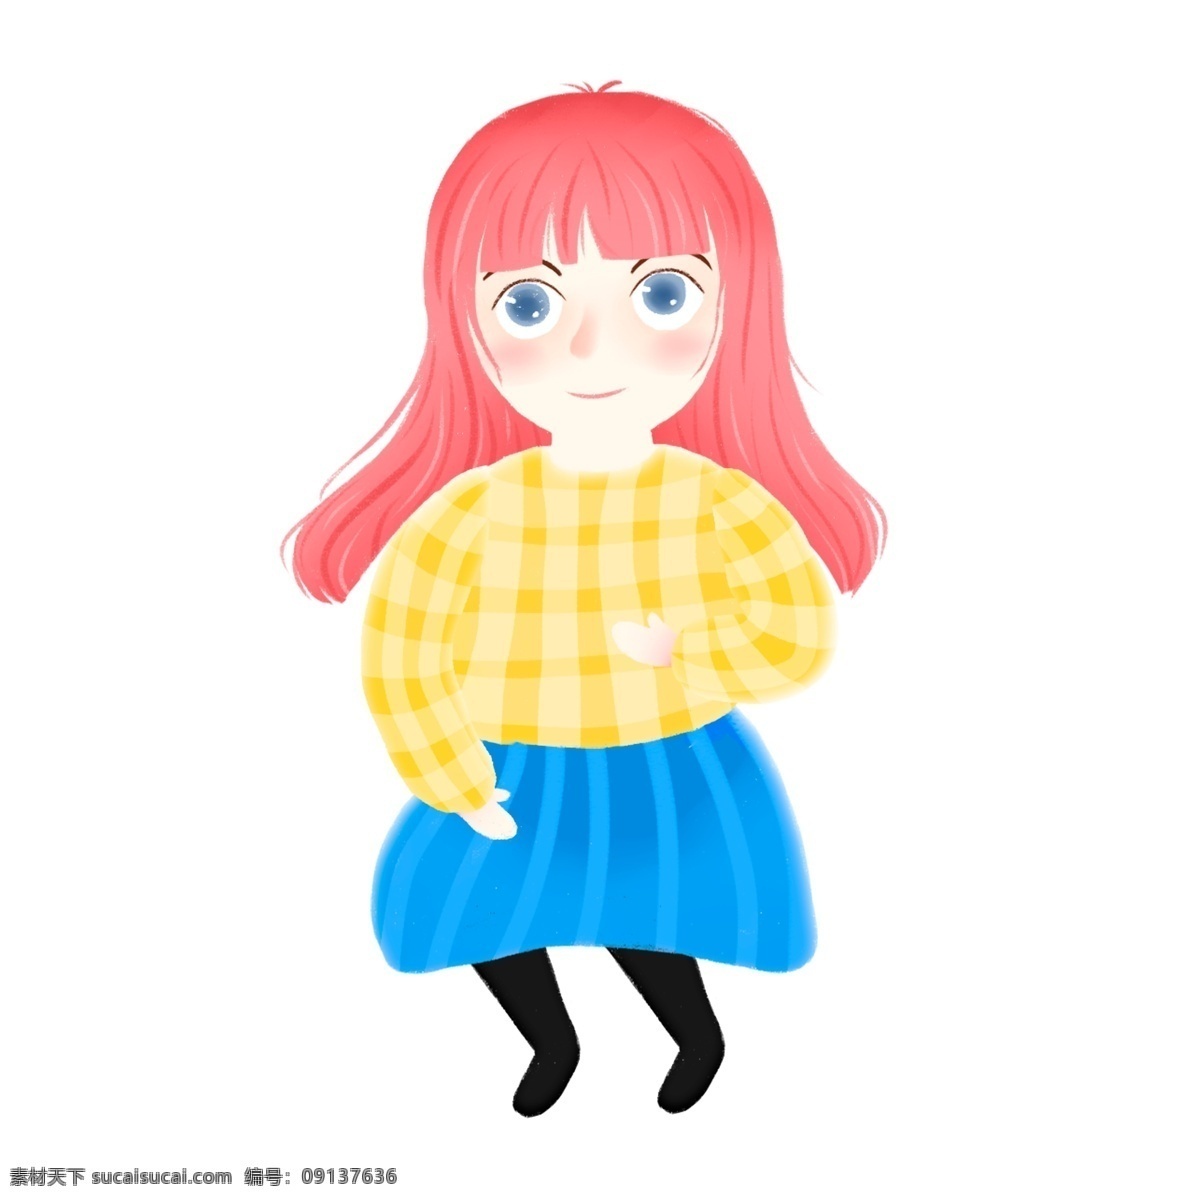 梦幻 可爱 小女孩 商用 元素 卡通 彩色 女孩 手绘 儿童 人物插画